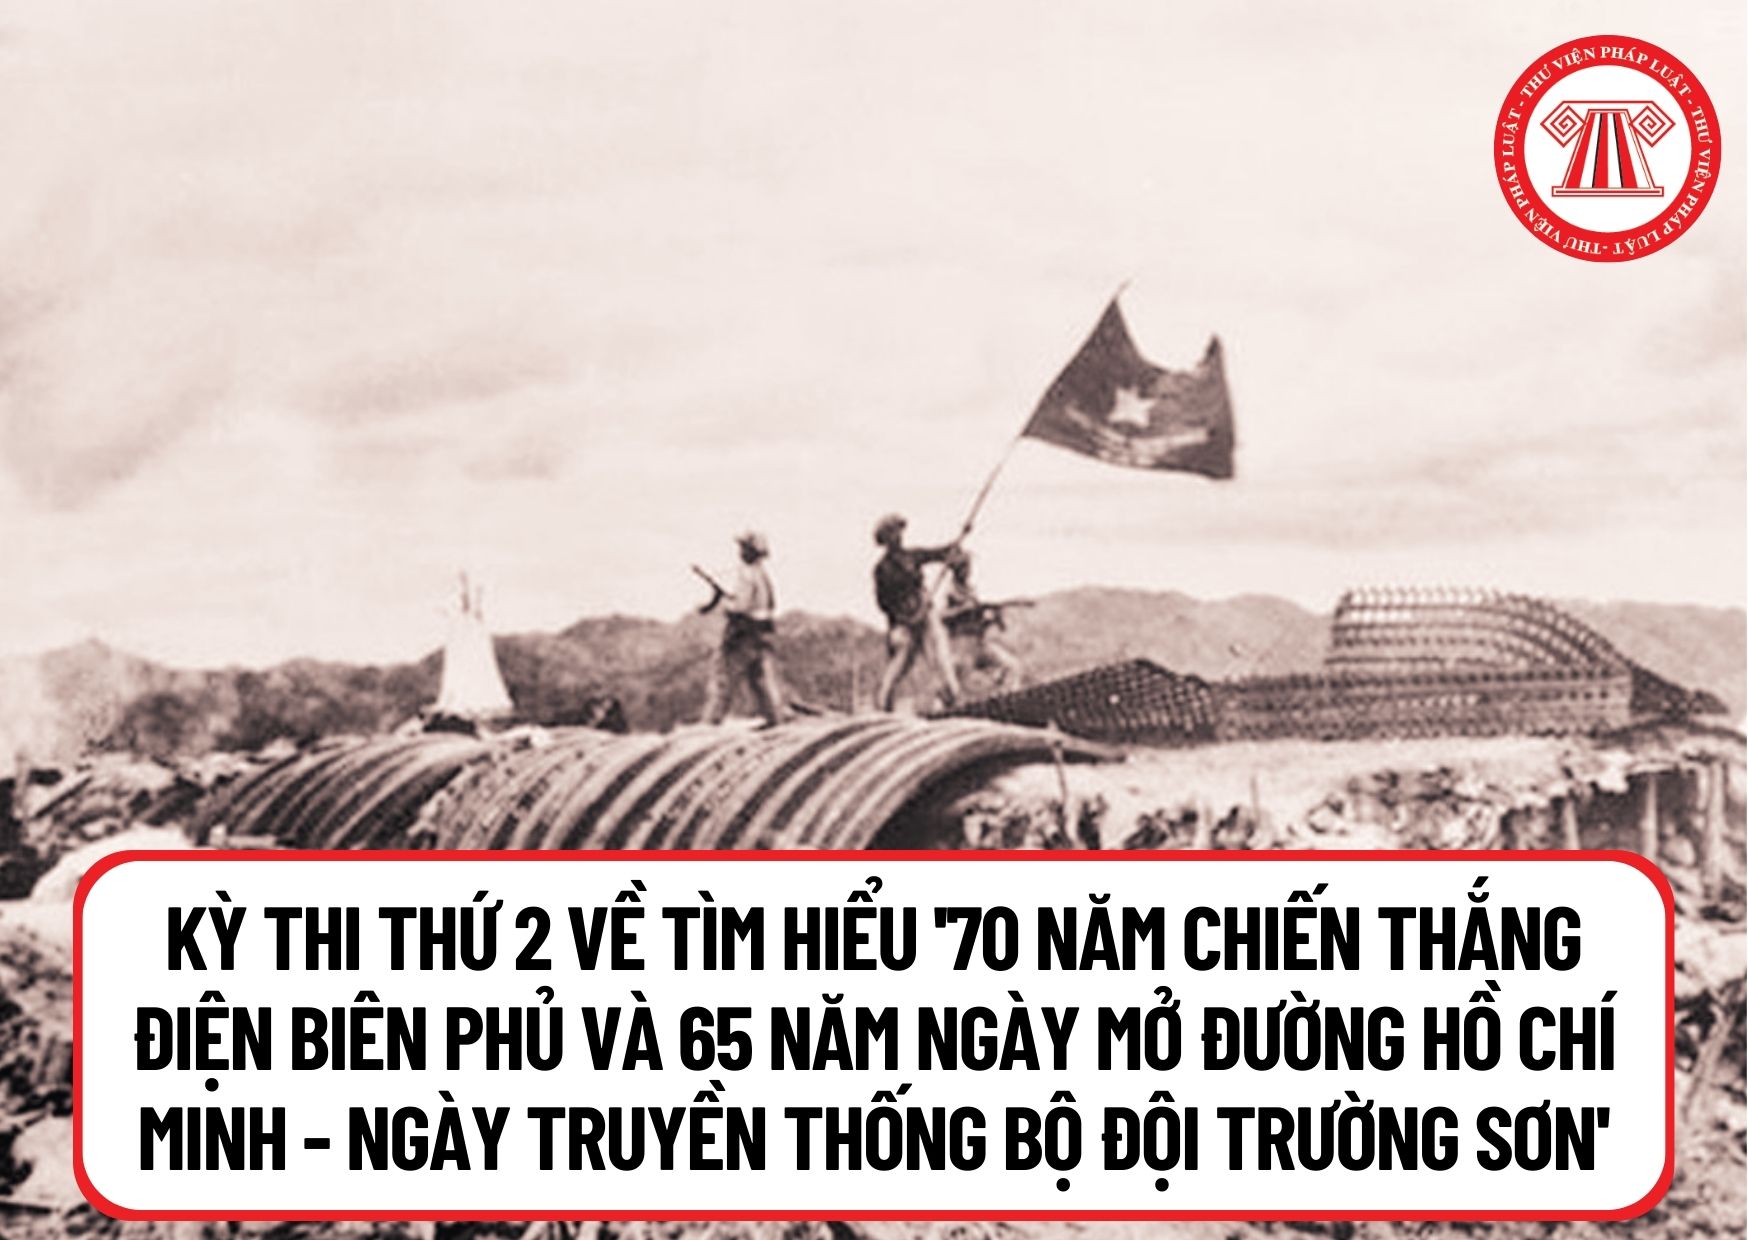 Diễn ra kỳ thi thứ 2 về tìm hiểu '70 năm chiến thắng Điện Biên Phủ và 65 năm Ngày mở đường Hồ Chí Minh - Ngày truyền thống Bộ đội Trường Sơn' khi nào?